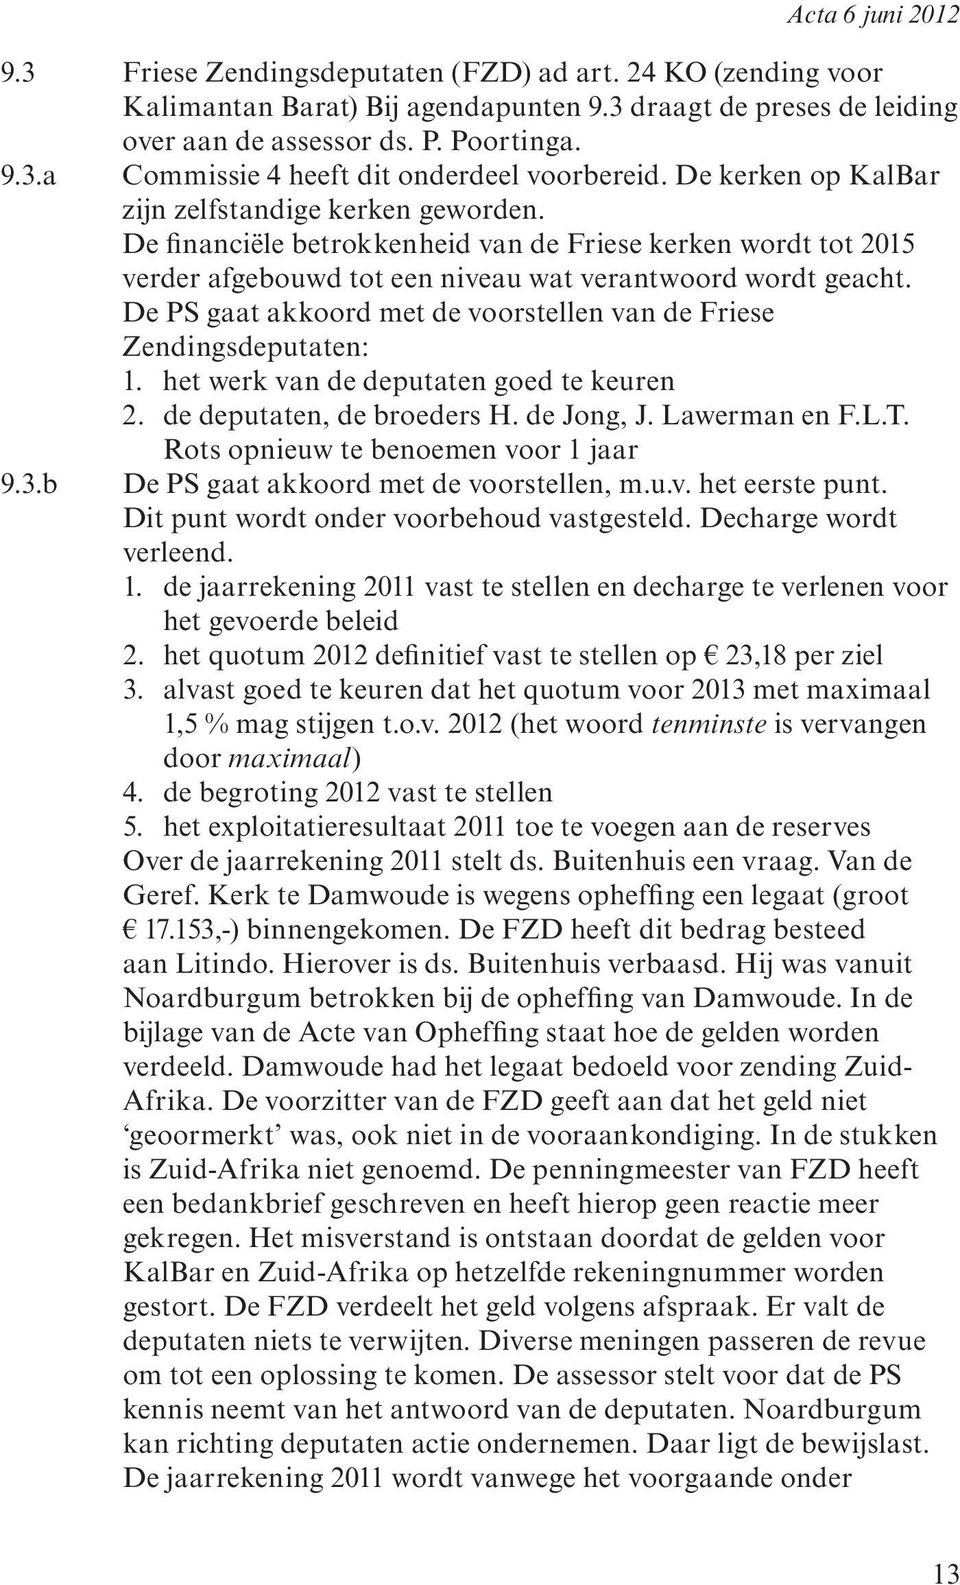 De PS gaat akkoord met de voorstellen van de Friese Zendingsdeputaten: 1. het werk van de deputaten goed te keuren 2. de deputaten, de broeders H. de Jong, J. Lawerman en F.L.T.